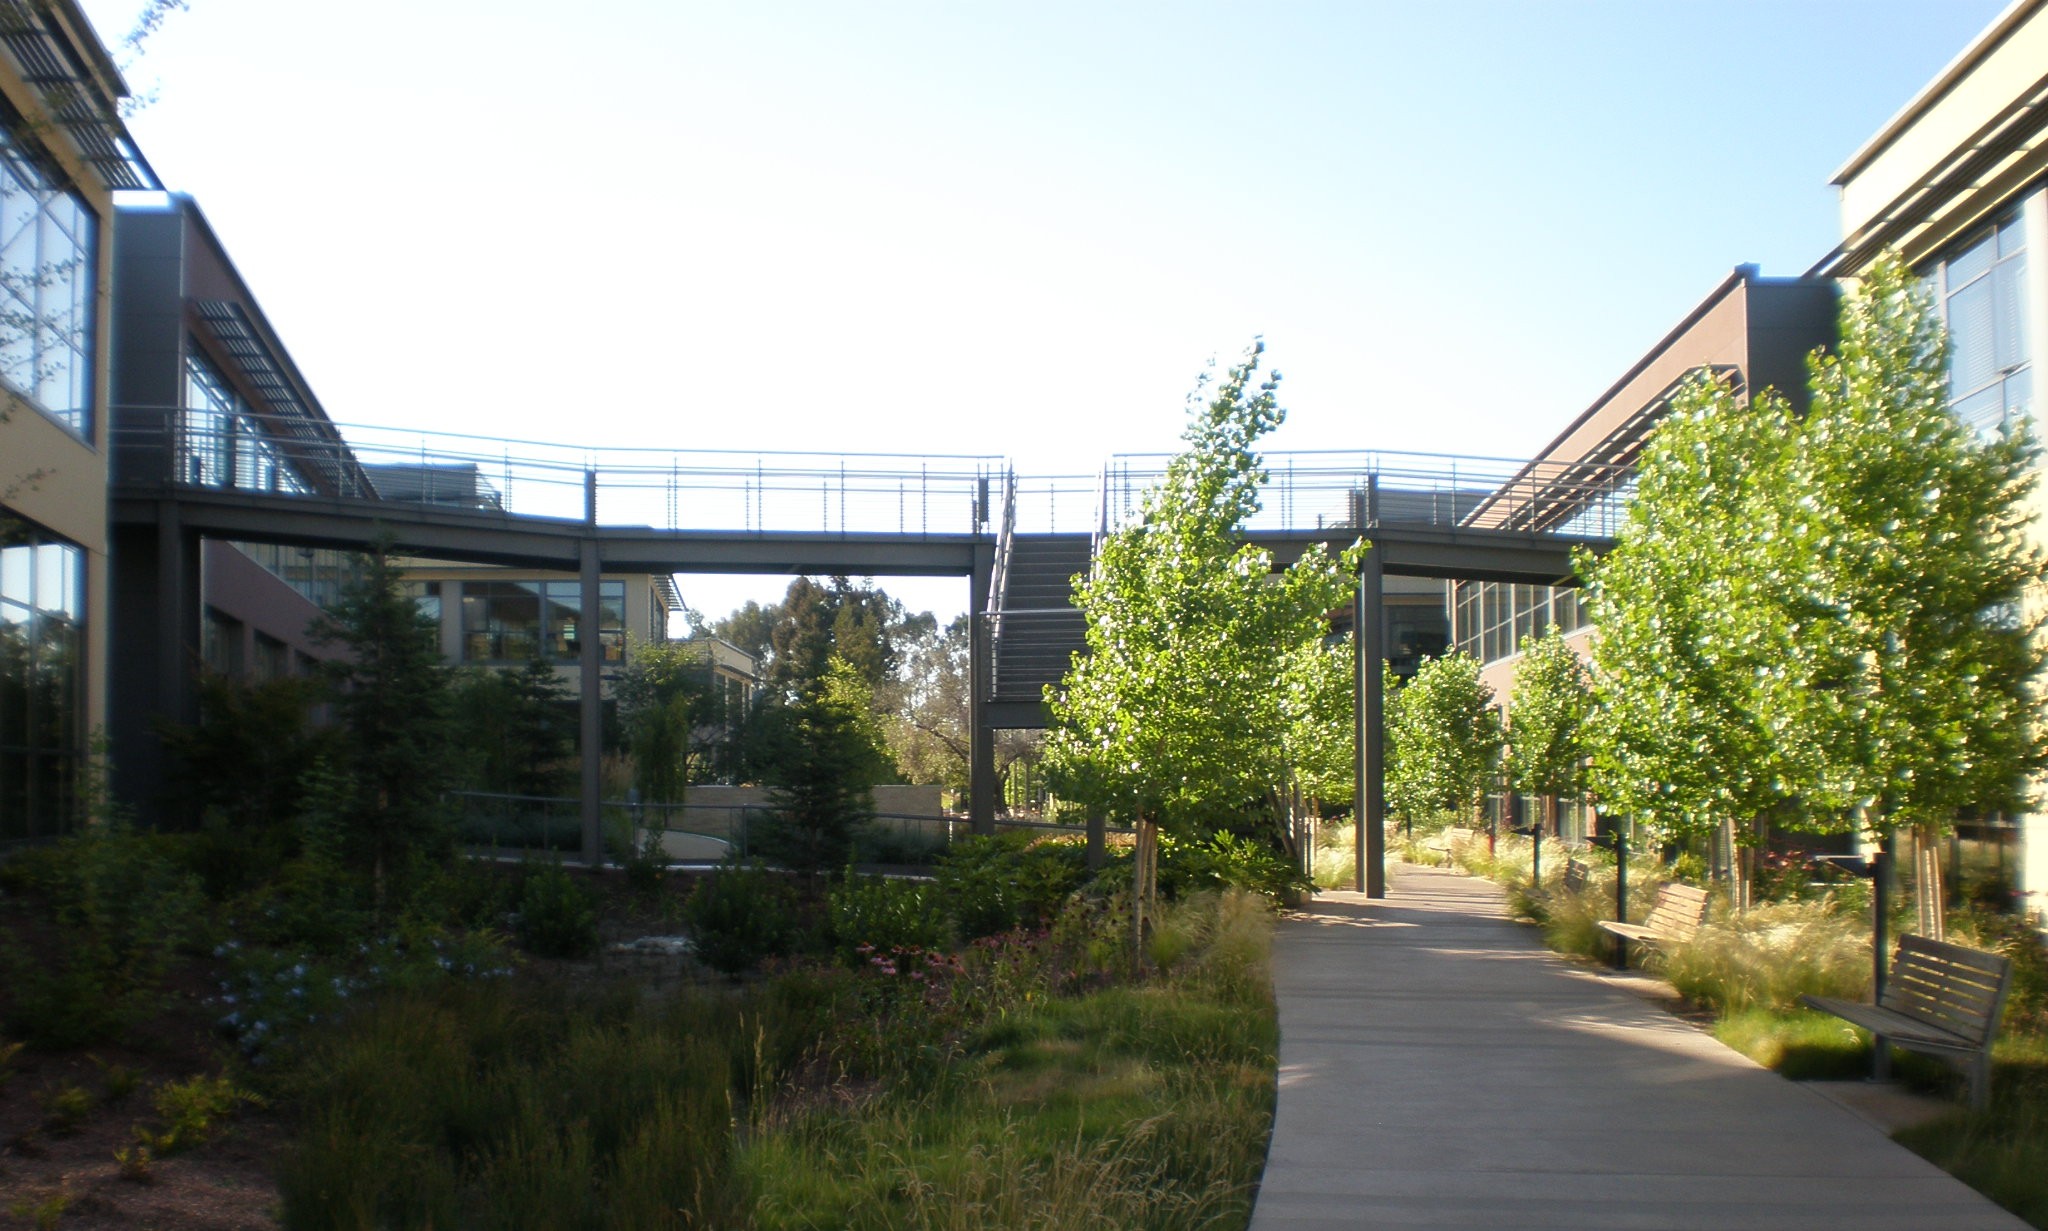 VMware's Palo Alto campus